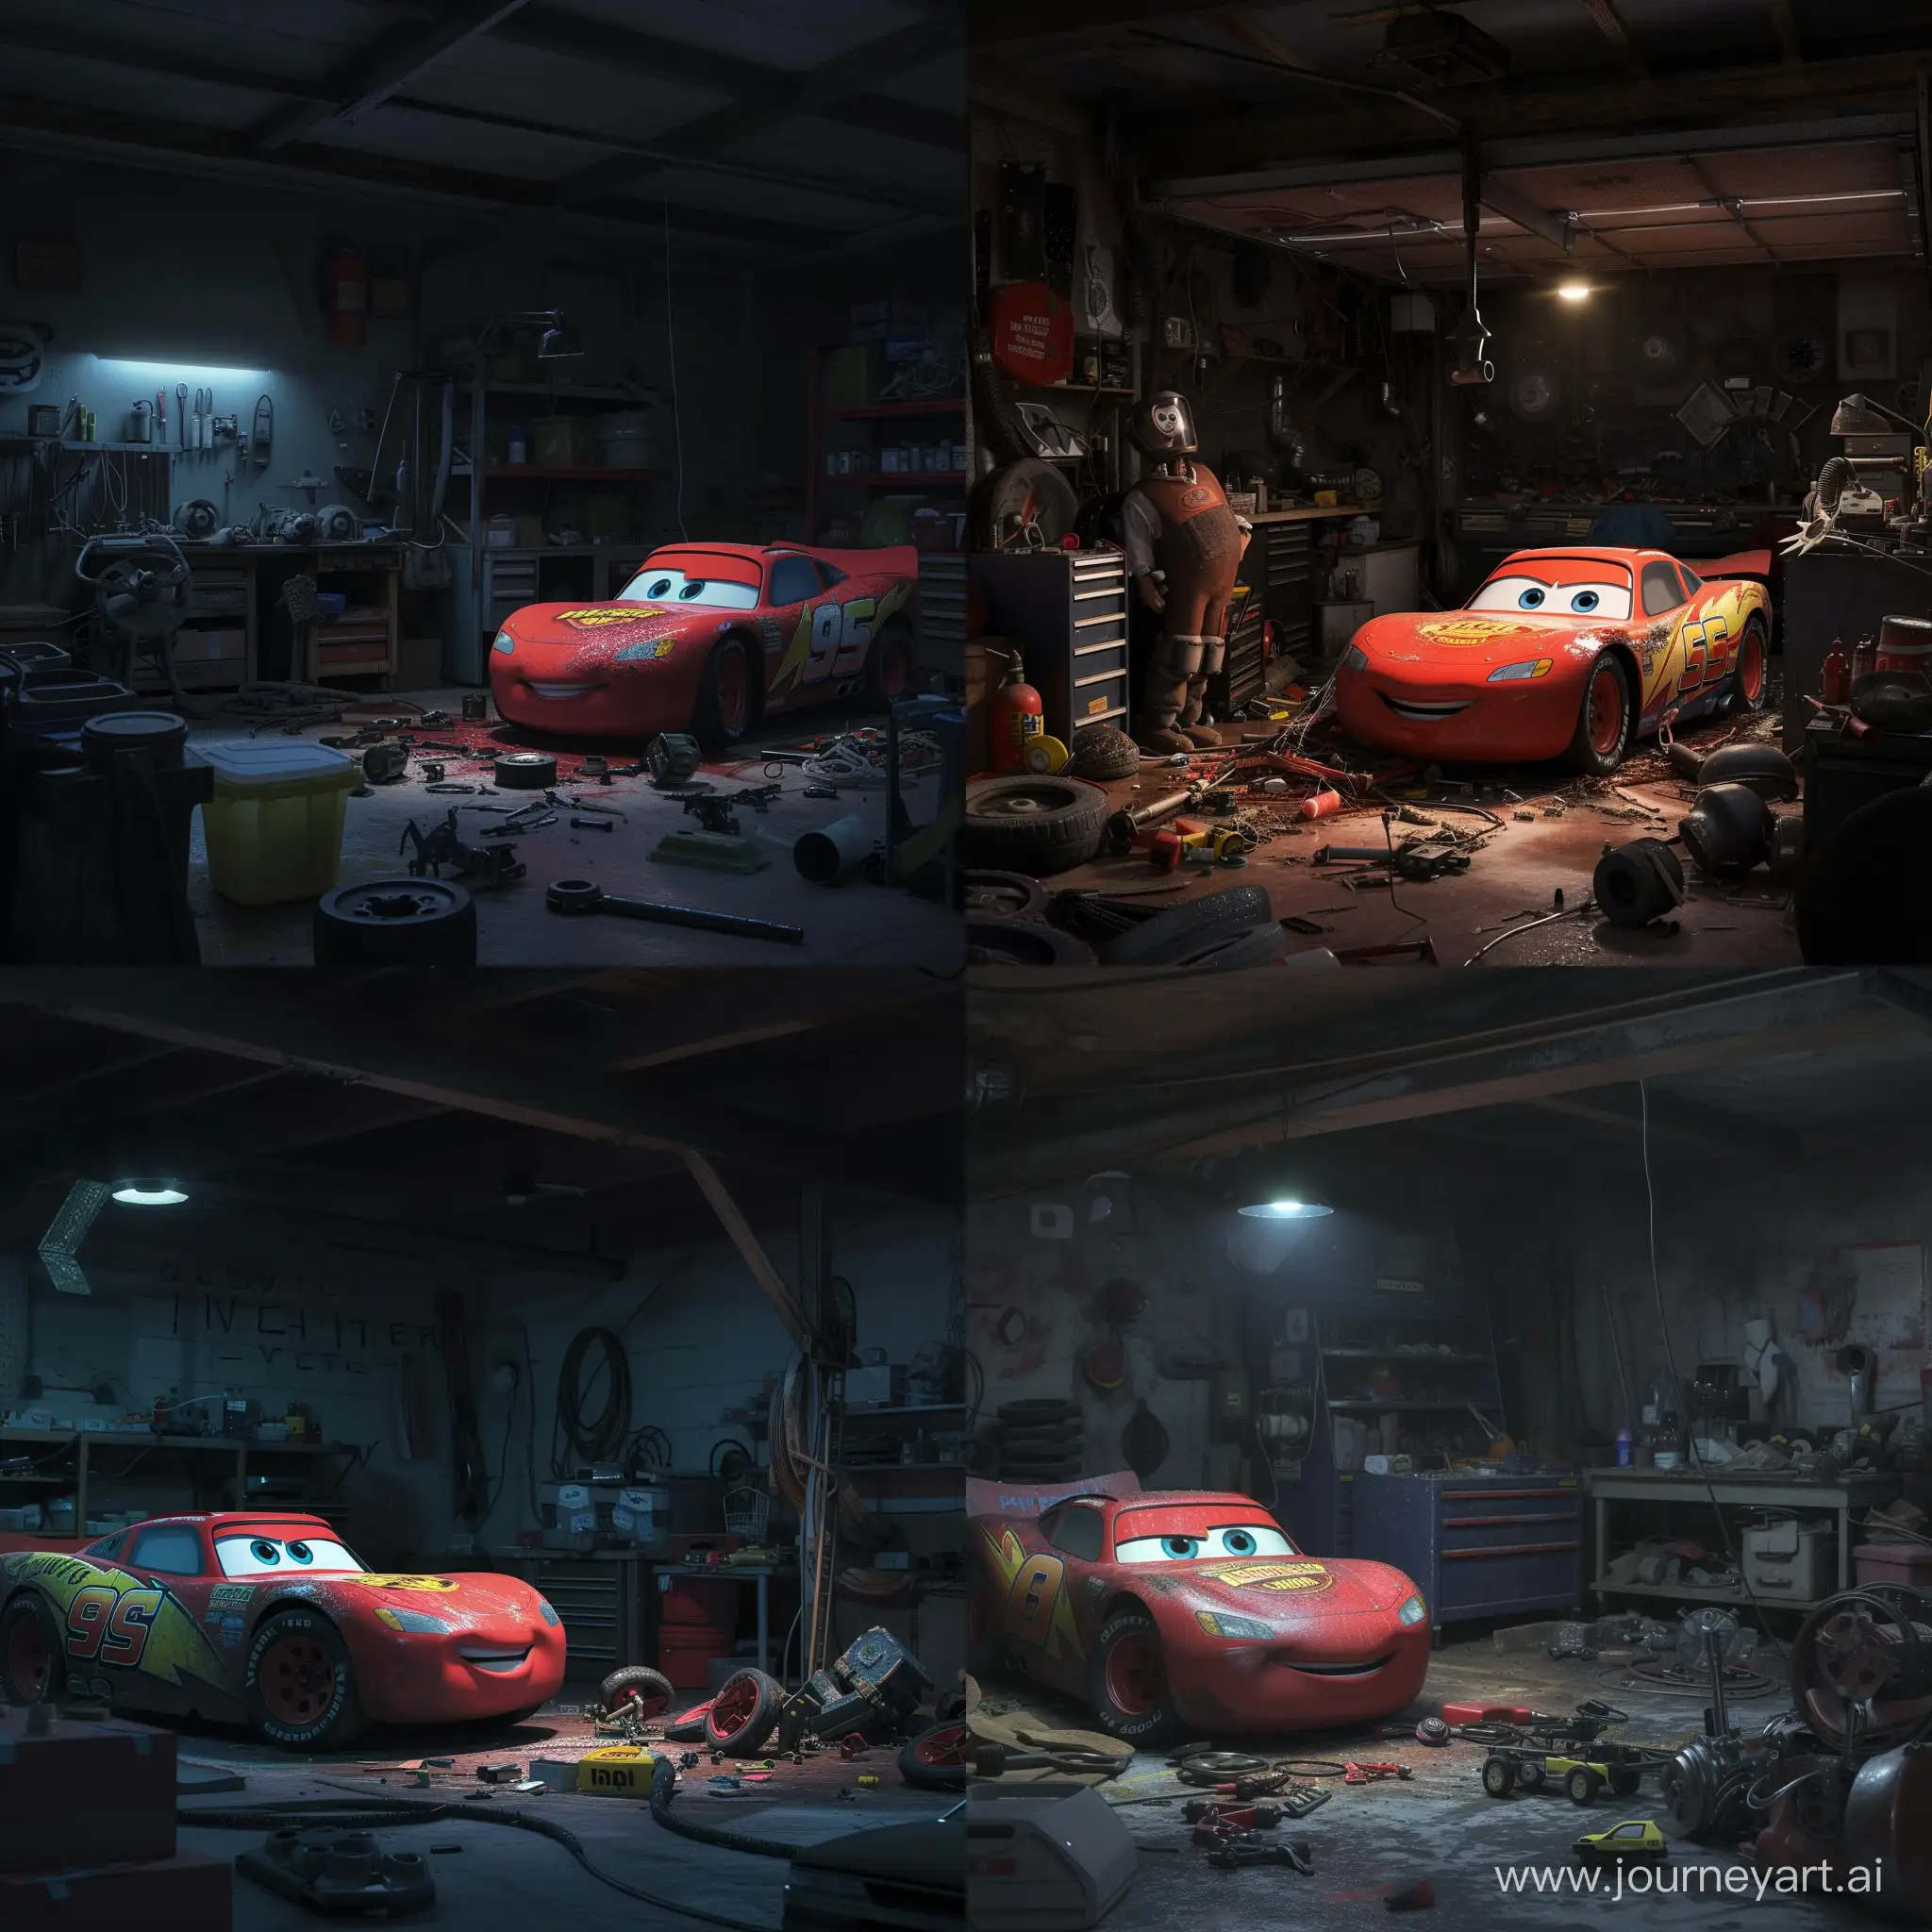 Broken-Lightning-McQueen-in-Dark-Garage-with-Mechanic